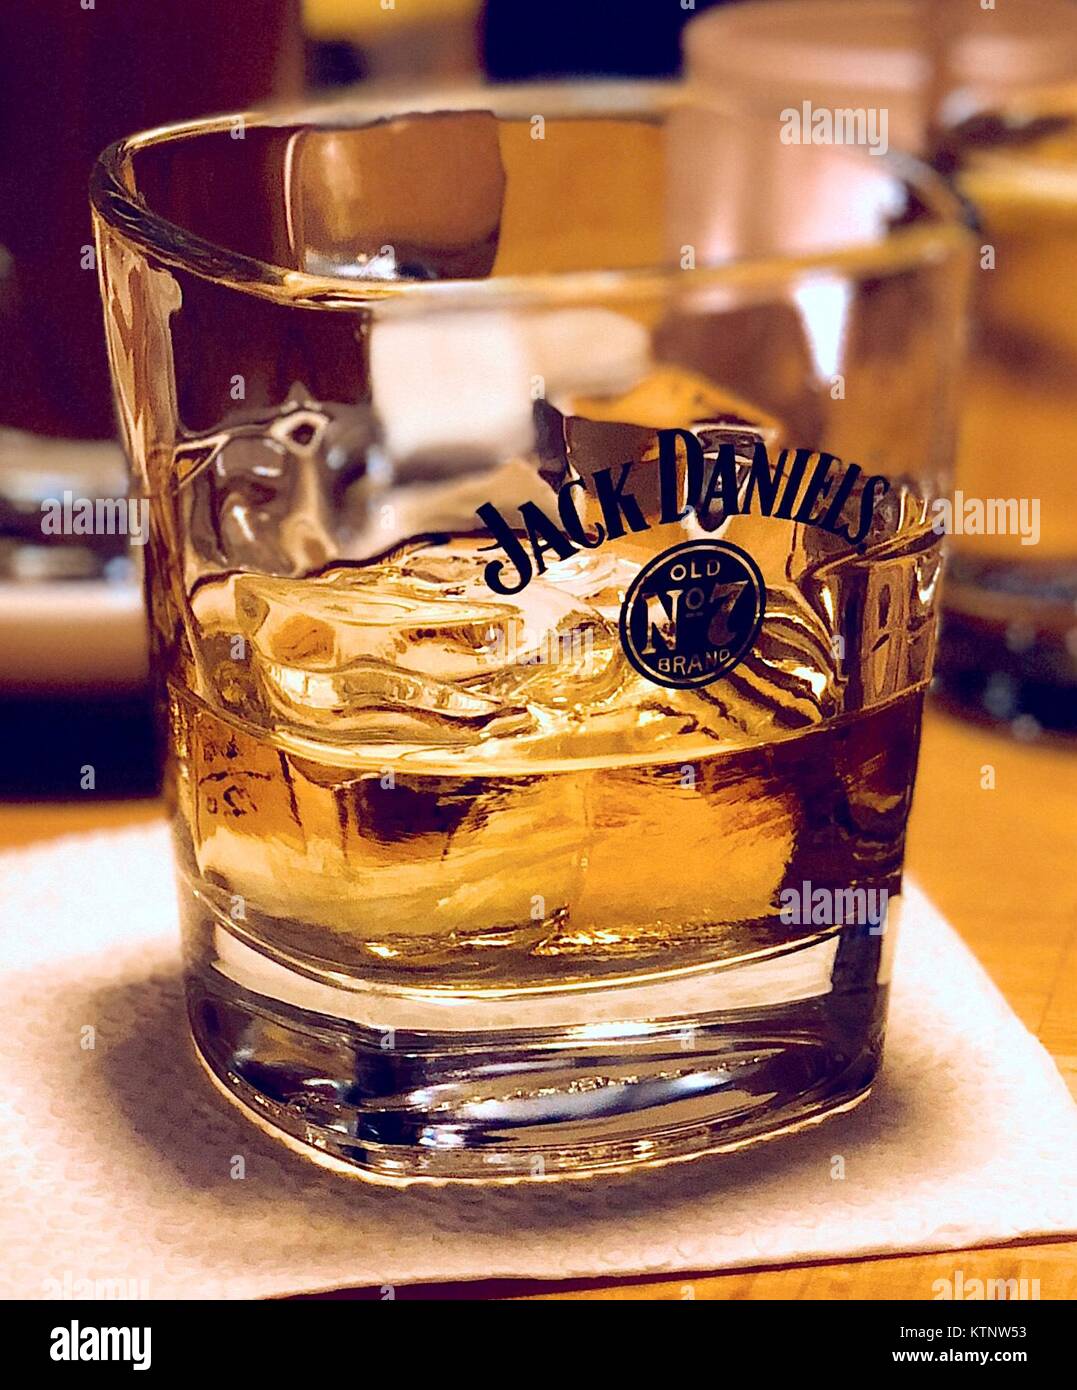 Ein Glas Jack Daniels mit Eis auf eine Serviette Stockfotografie - Alamy